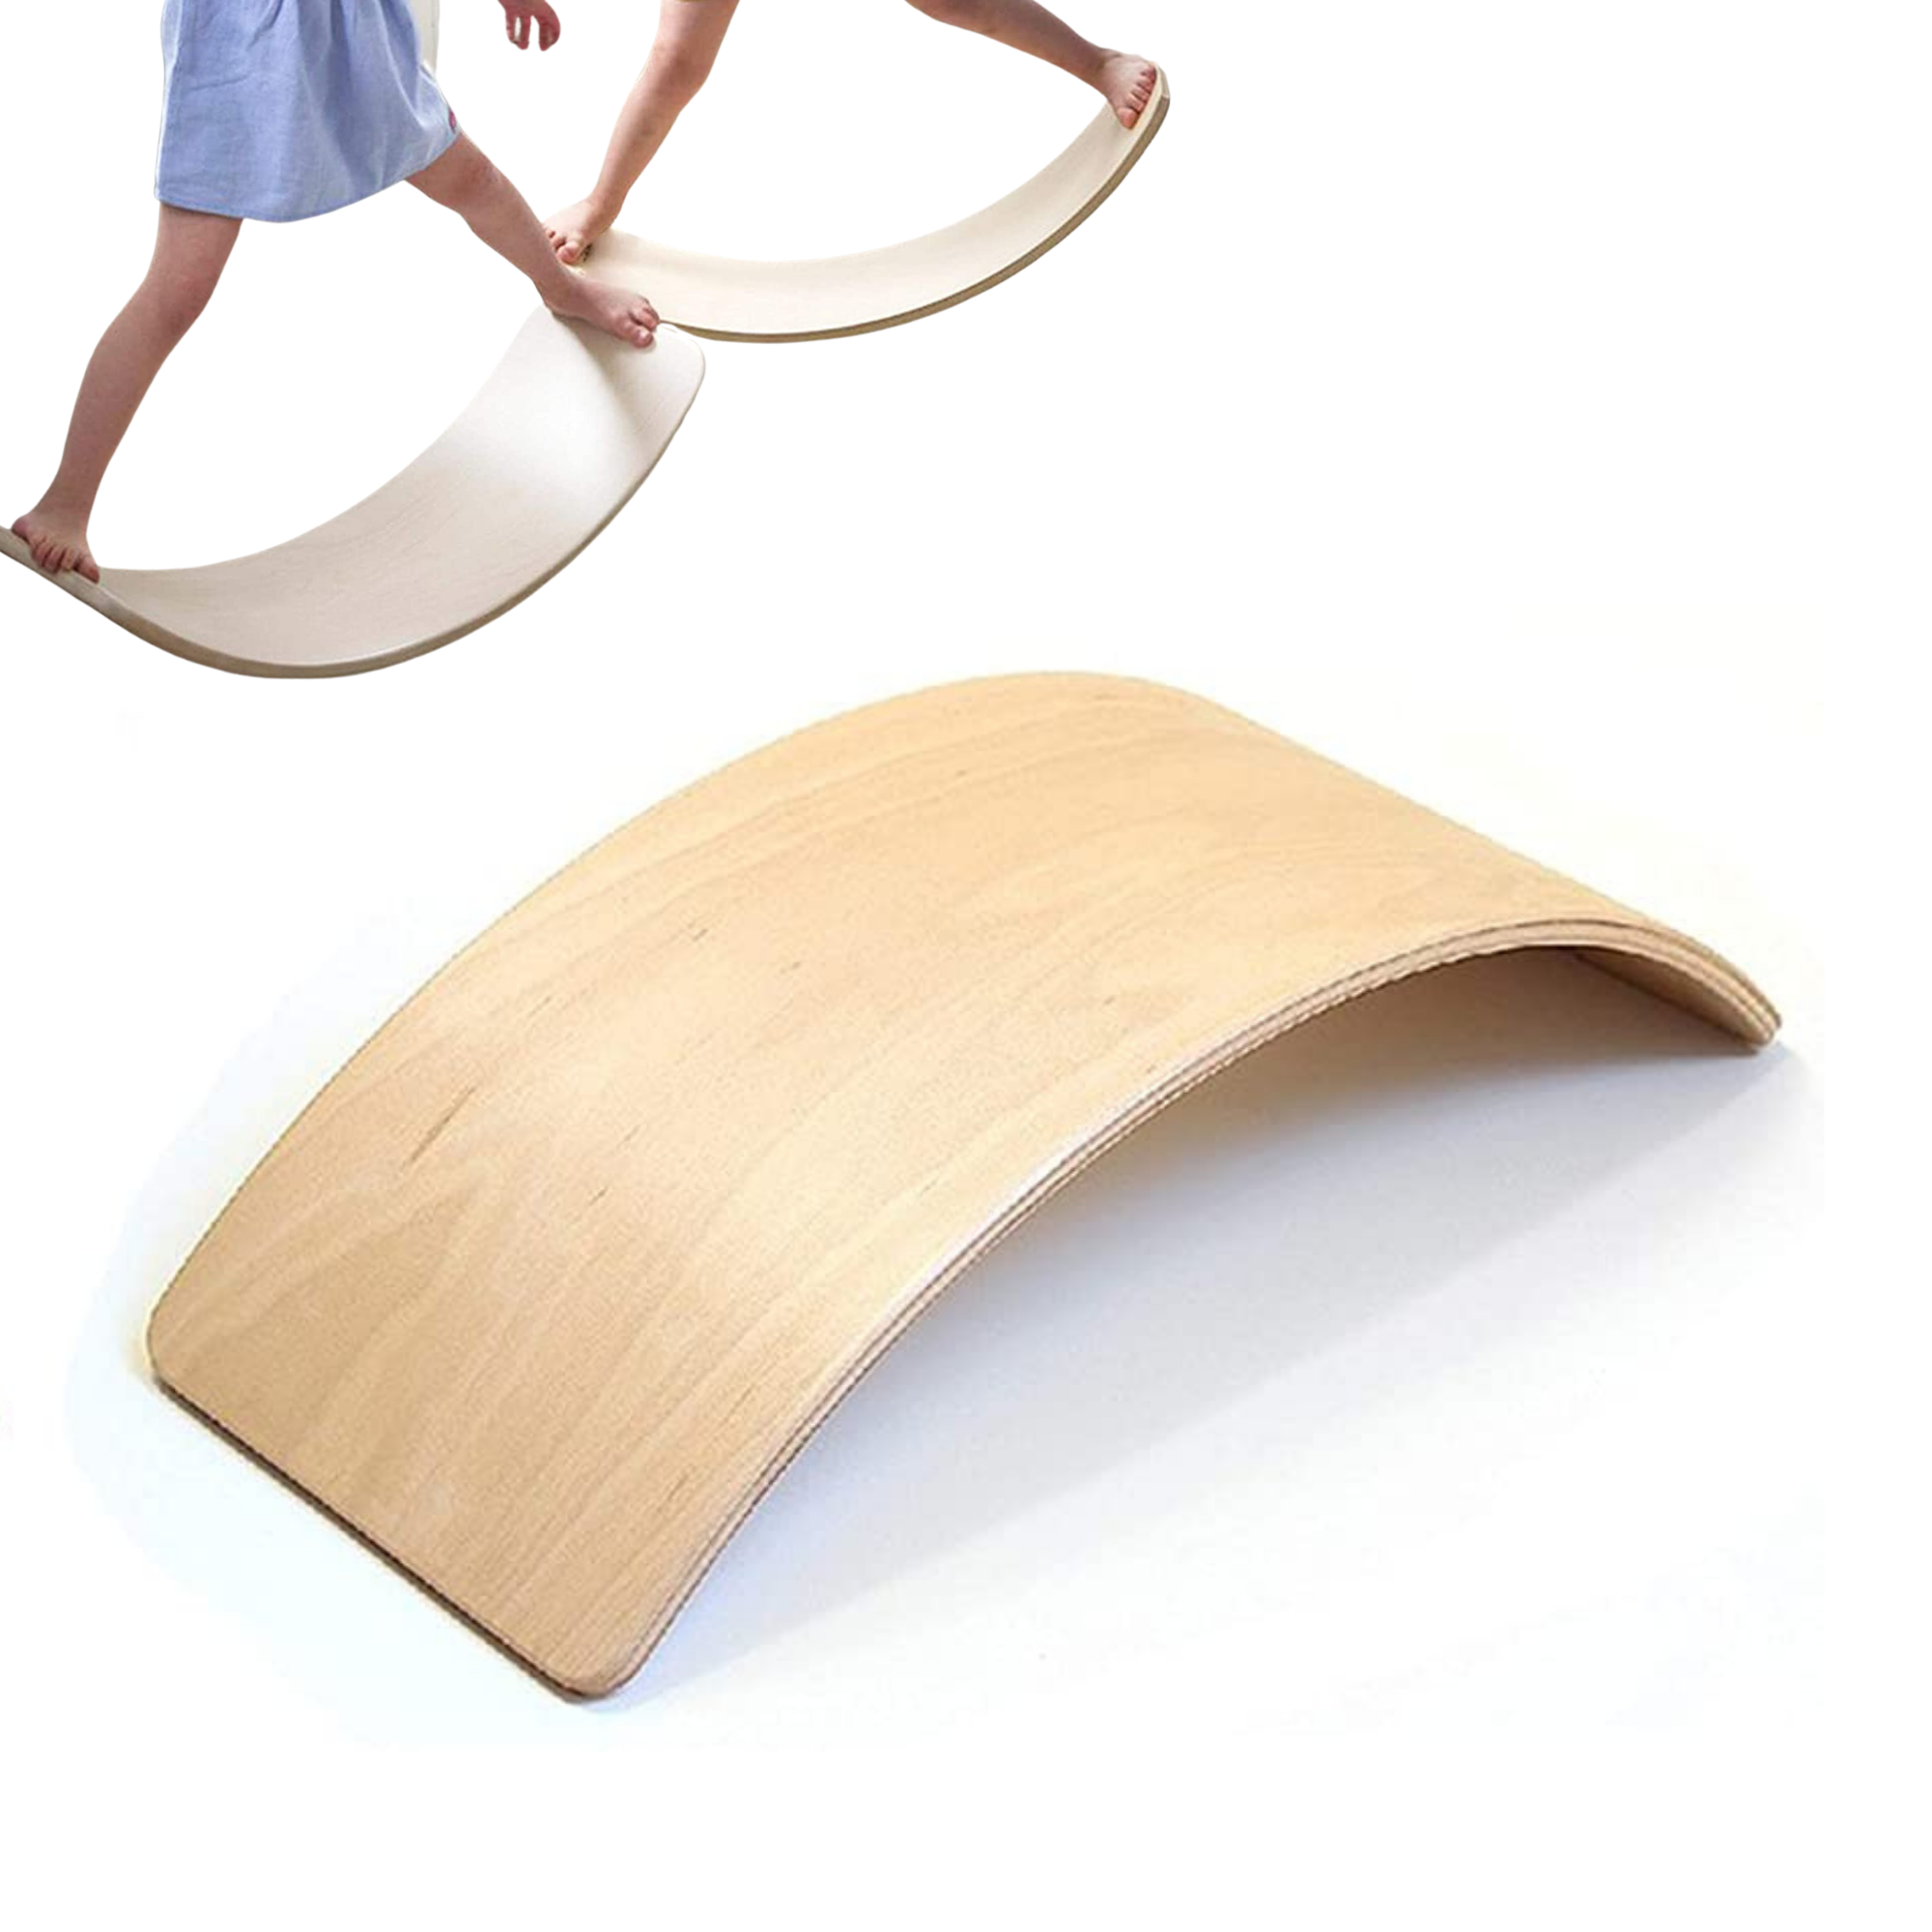 Bamboo Wobble Board, Wobble Balance Board - Decomil